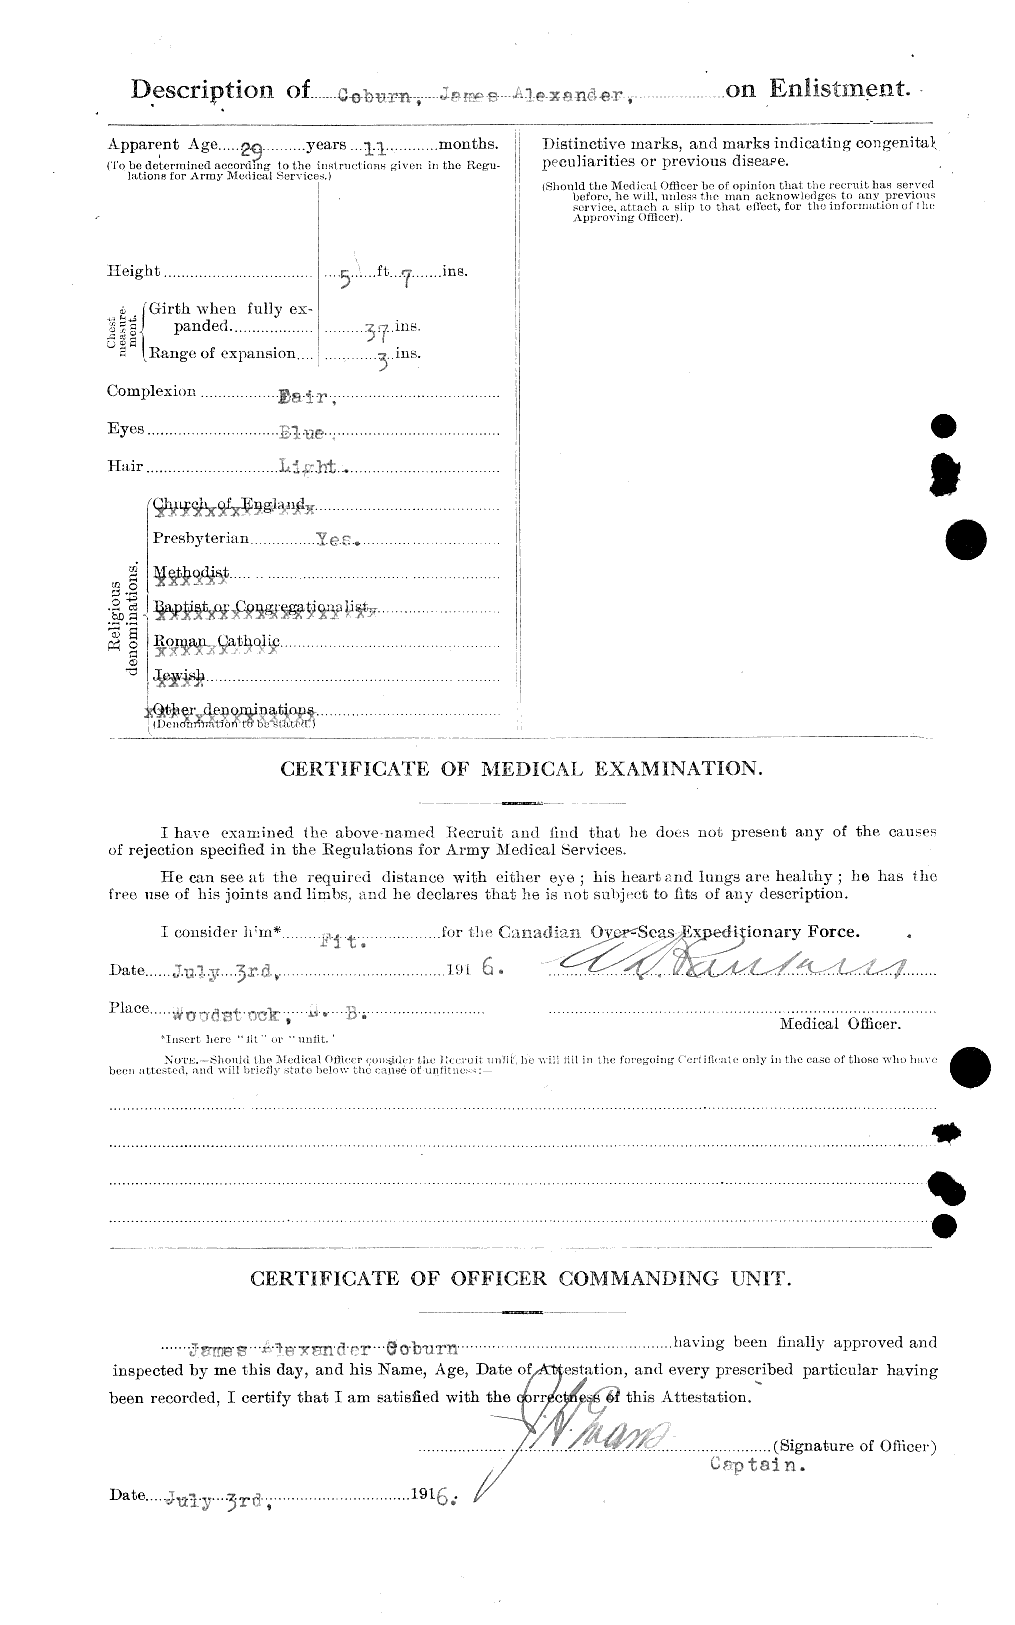 Dossiers du Personnel de la Première Guerre mondiale - CEC 025768b